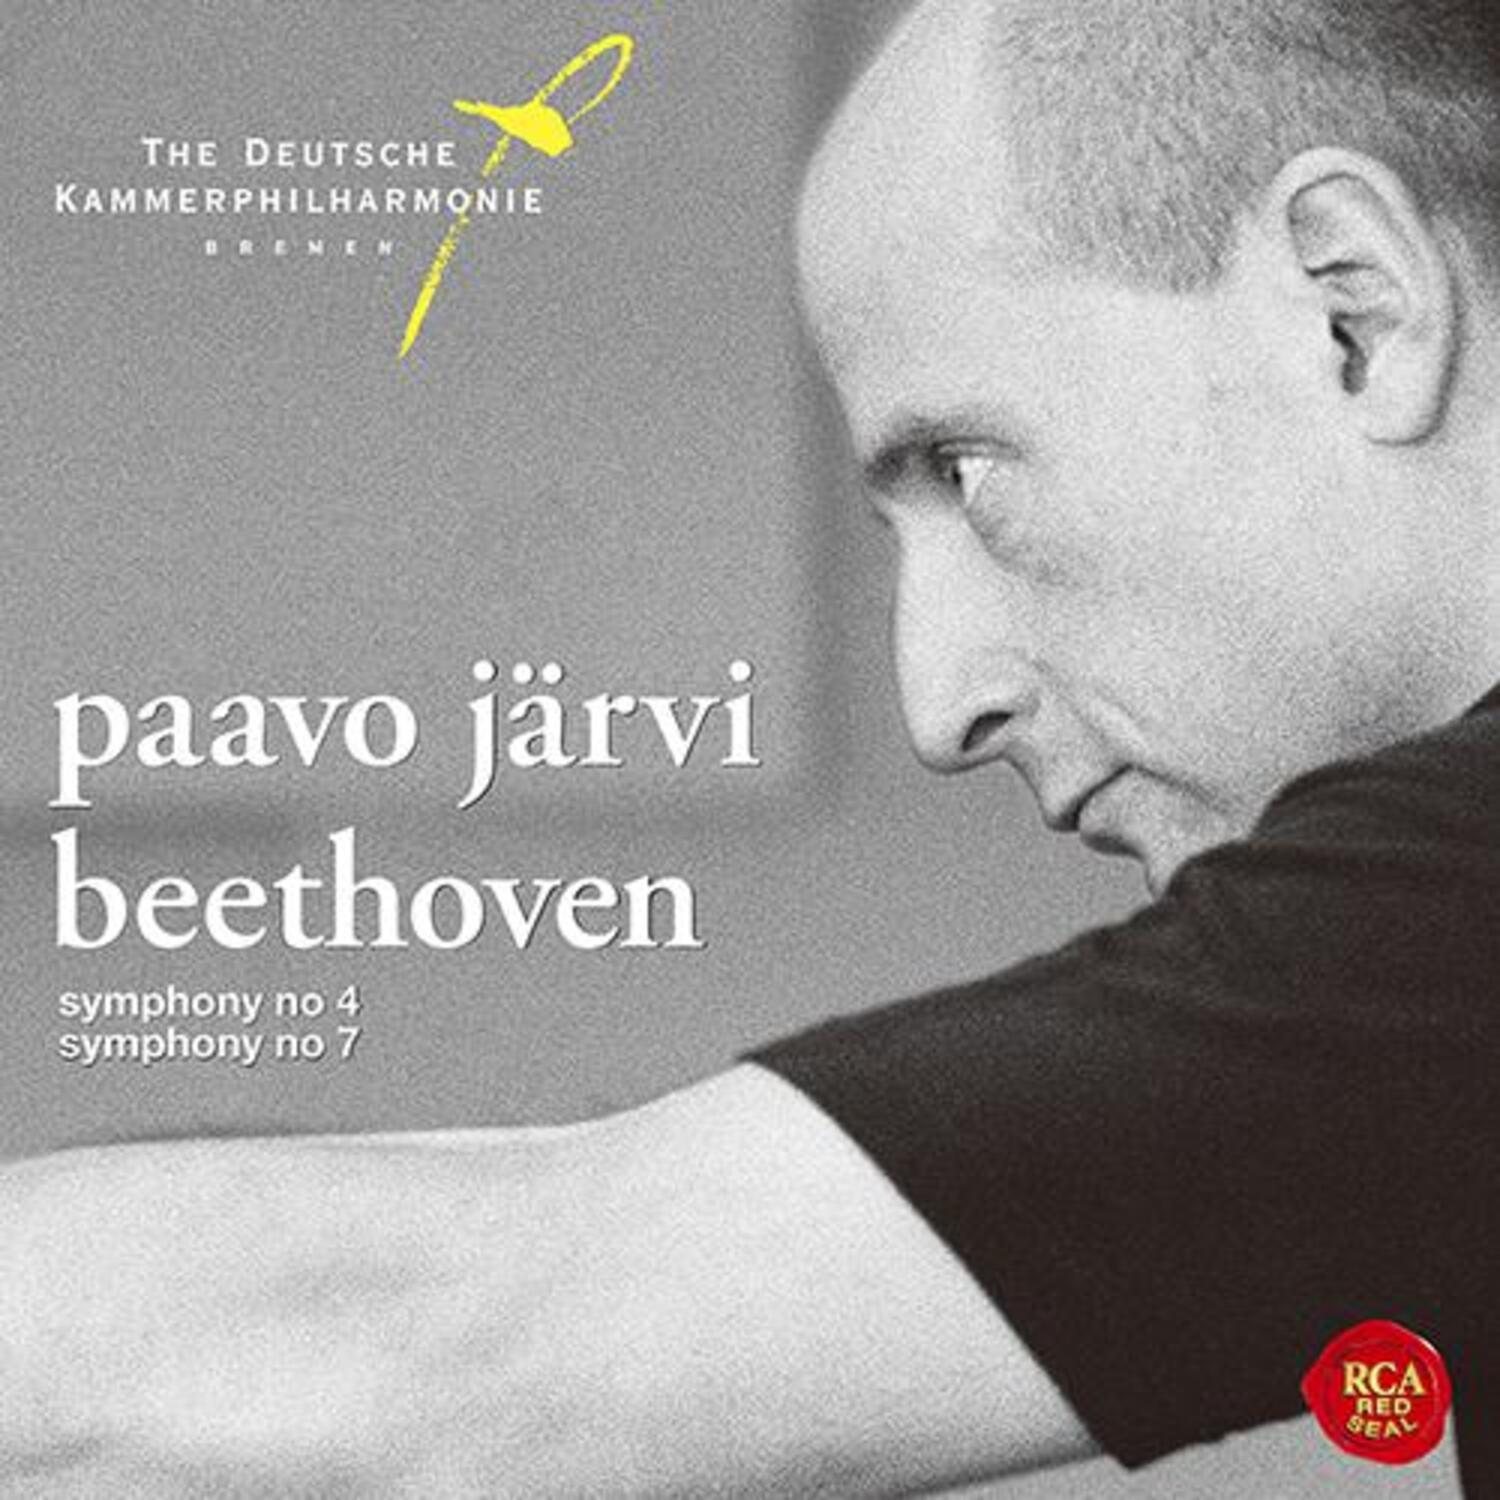 파보 예르비 &amp; 브리멘 도이치 캄머필하모닉(Paavo Jarvi &amp; The Deutsche Kammerphilharmonie Bremen) - [베토벤 교향곡 4&amp;7번]